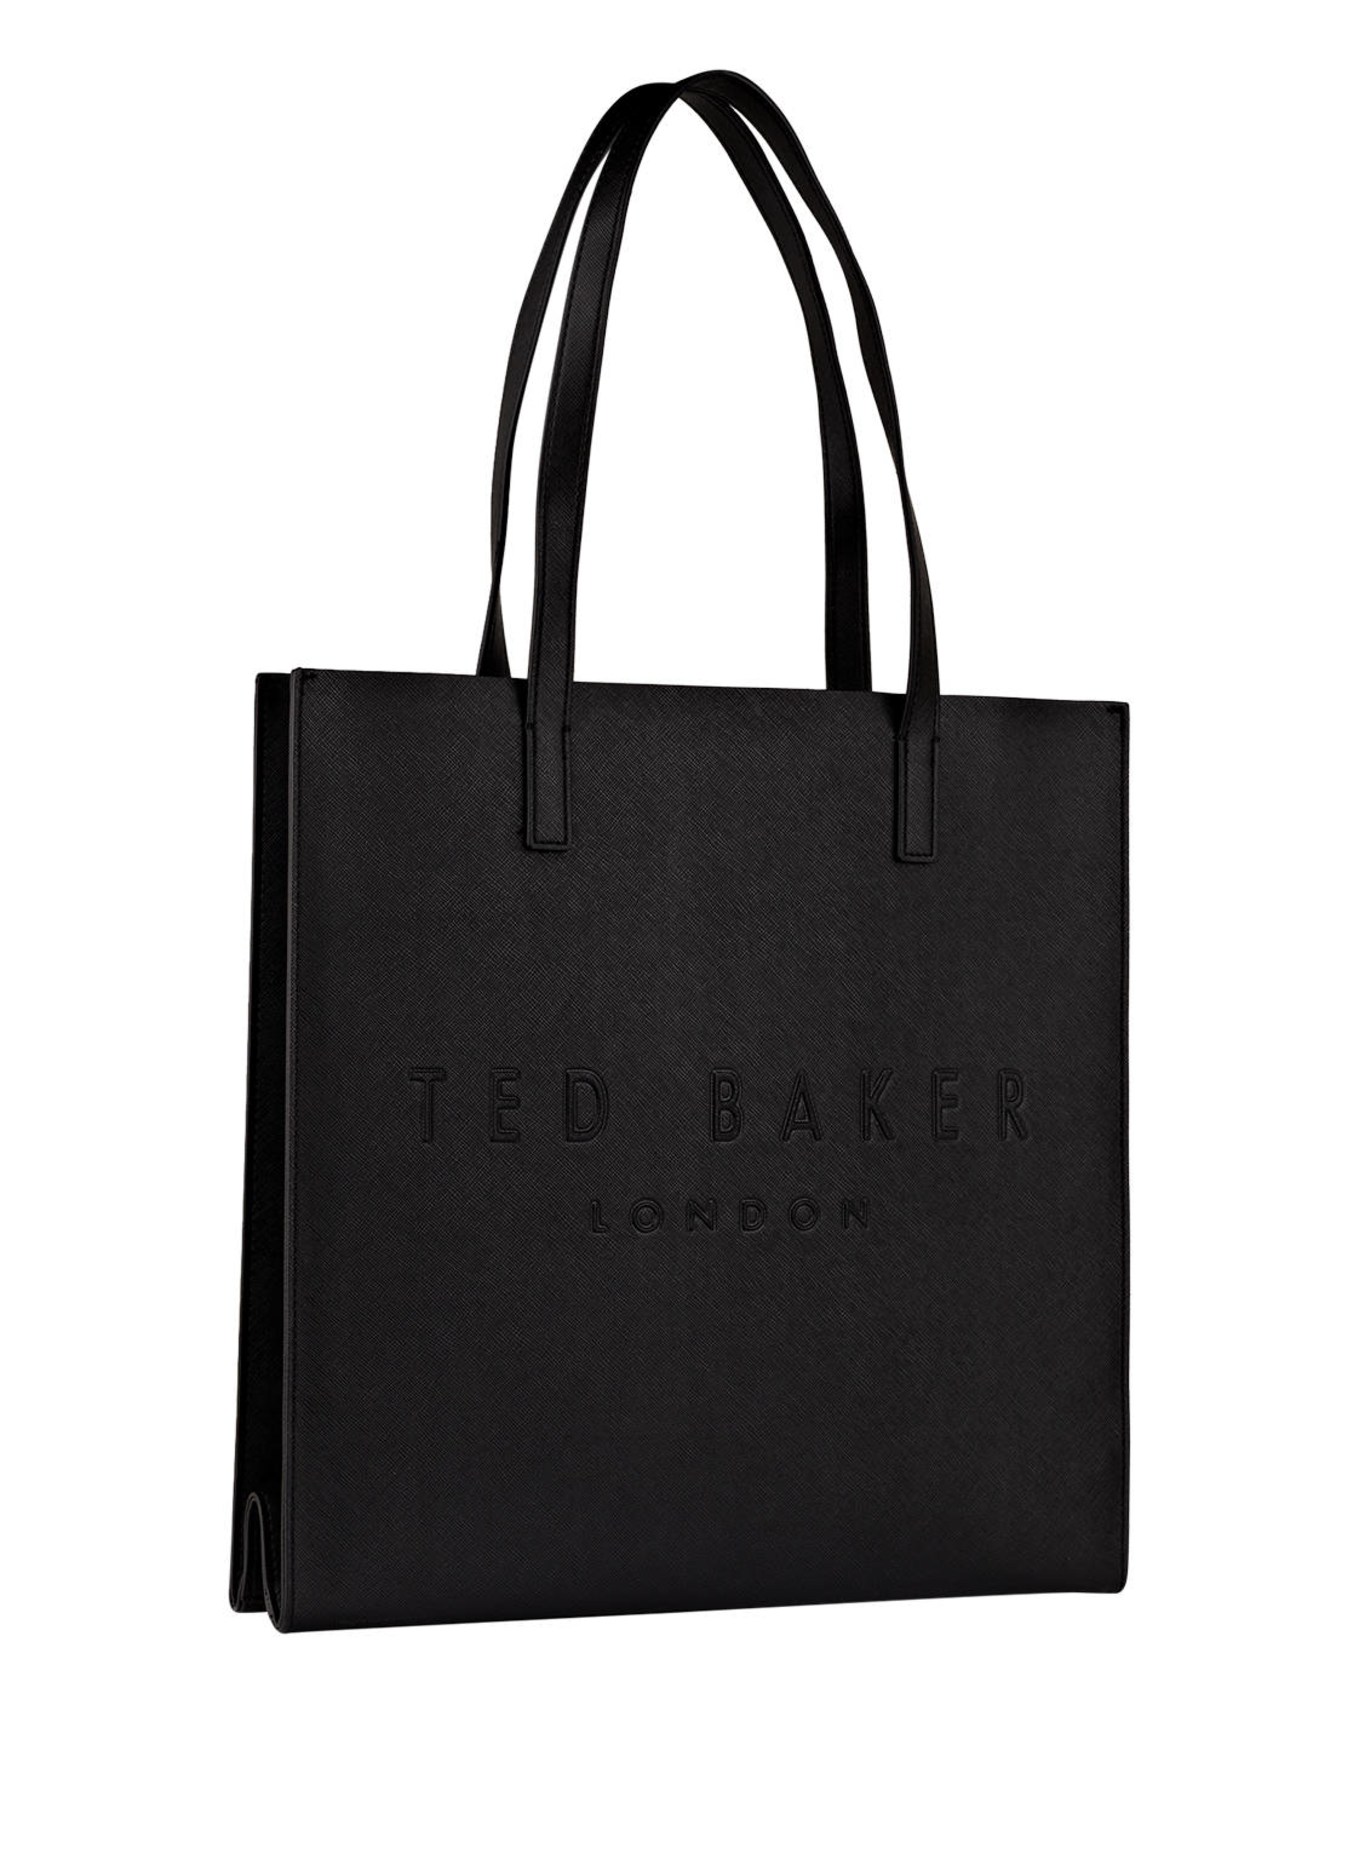 TED BAKER Shopper SOOCON, Color: BLACK (Image 2)